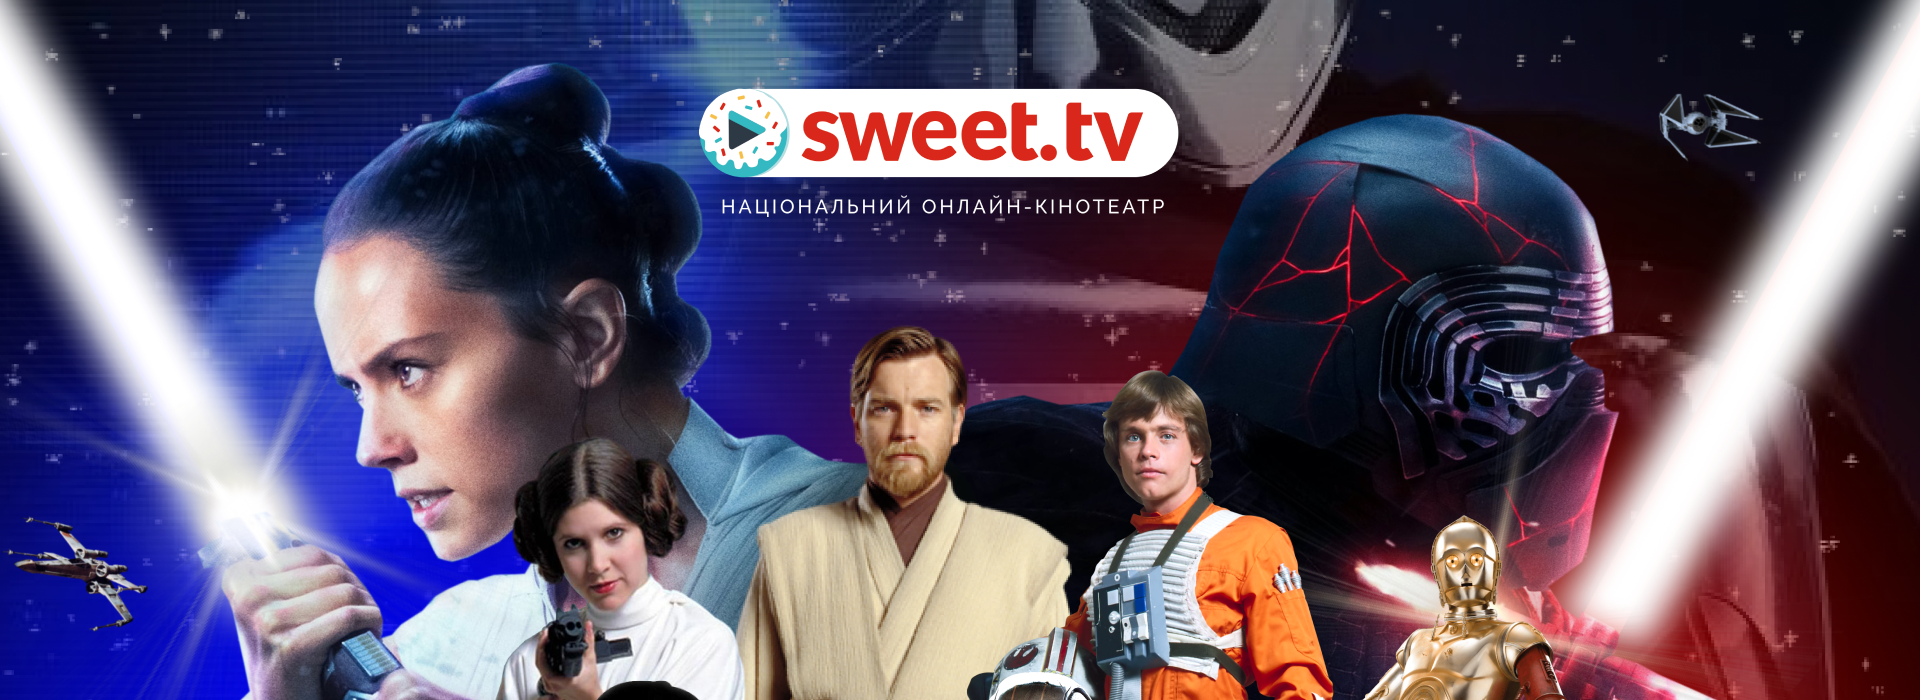 40 років кіно за 2 тижні: SWEET.TV відкрив доступ до всіх фільмів саги «Зоряні війни»